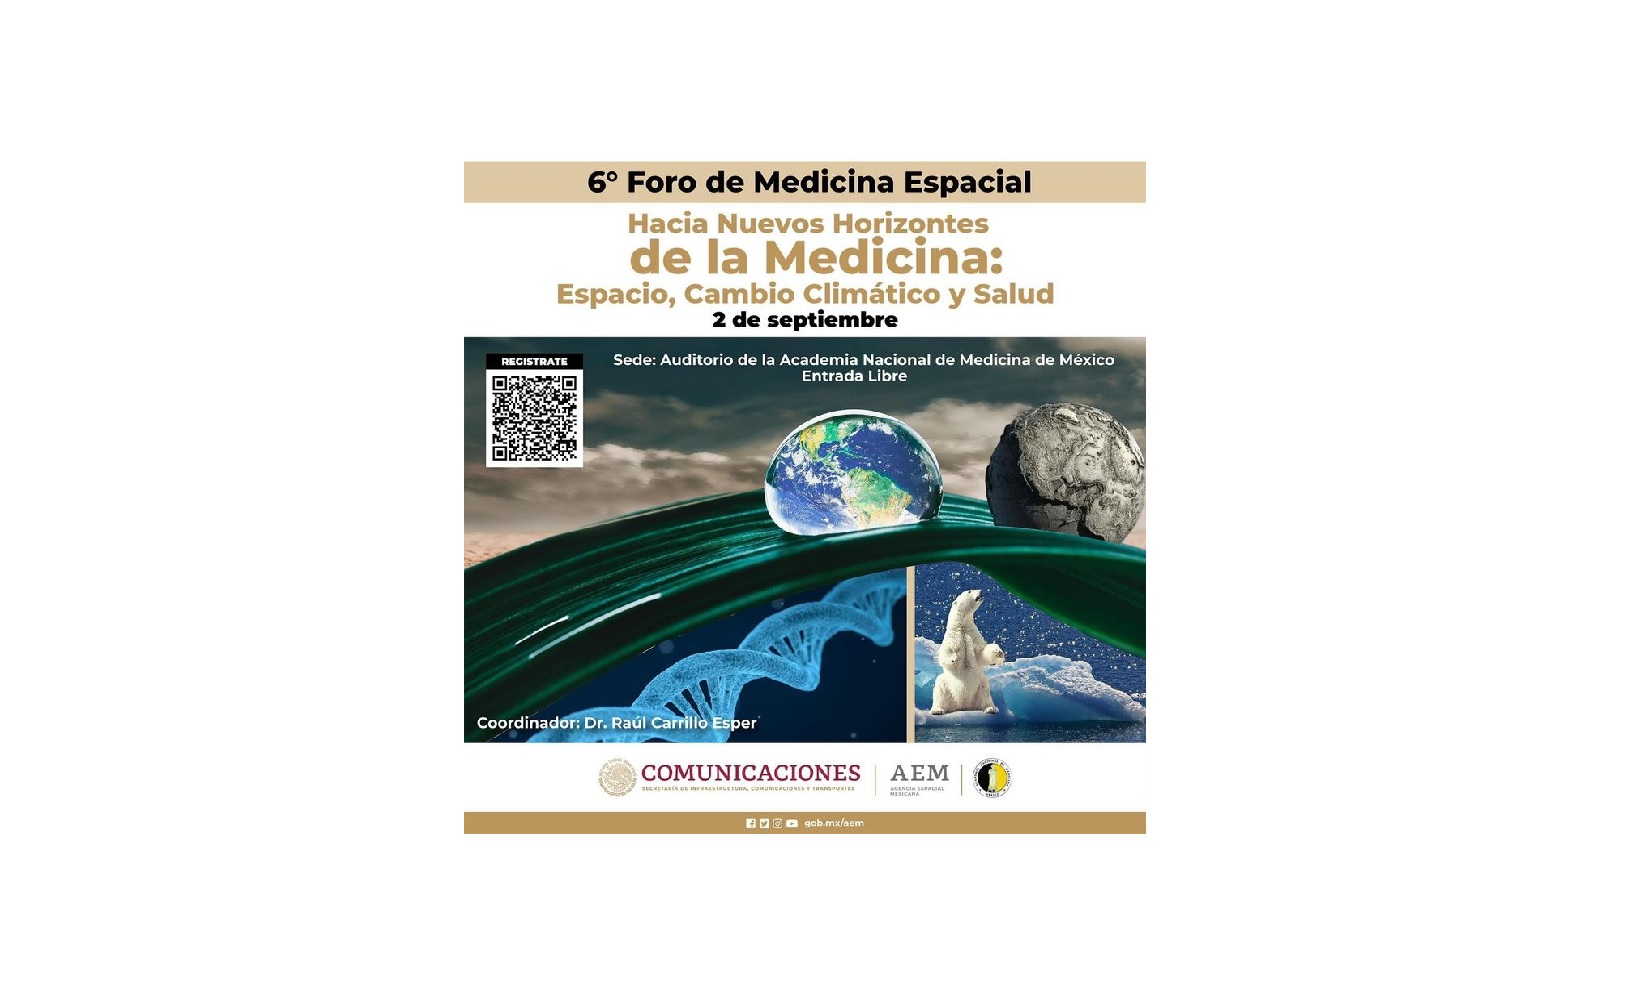 “México se posiciona como líder en la medicina espacial y el Foro ilustrará acerca de cómo la ciencia y la tecnología pueden tener potenciales aplicaciones”, afirmó Salvador Landeros, titular de la AEM.